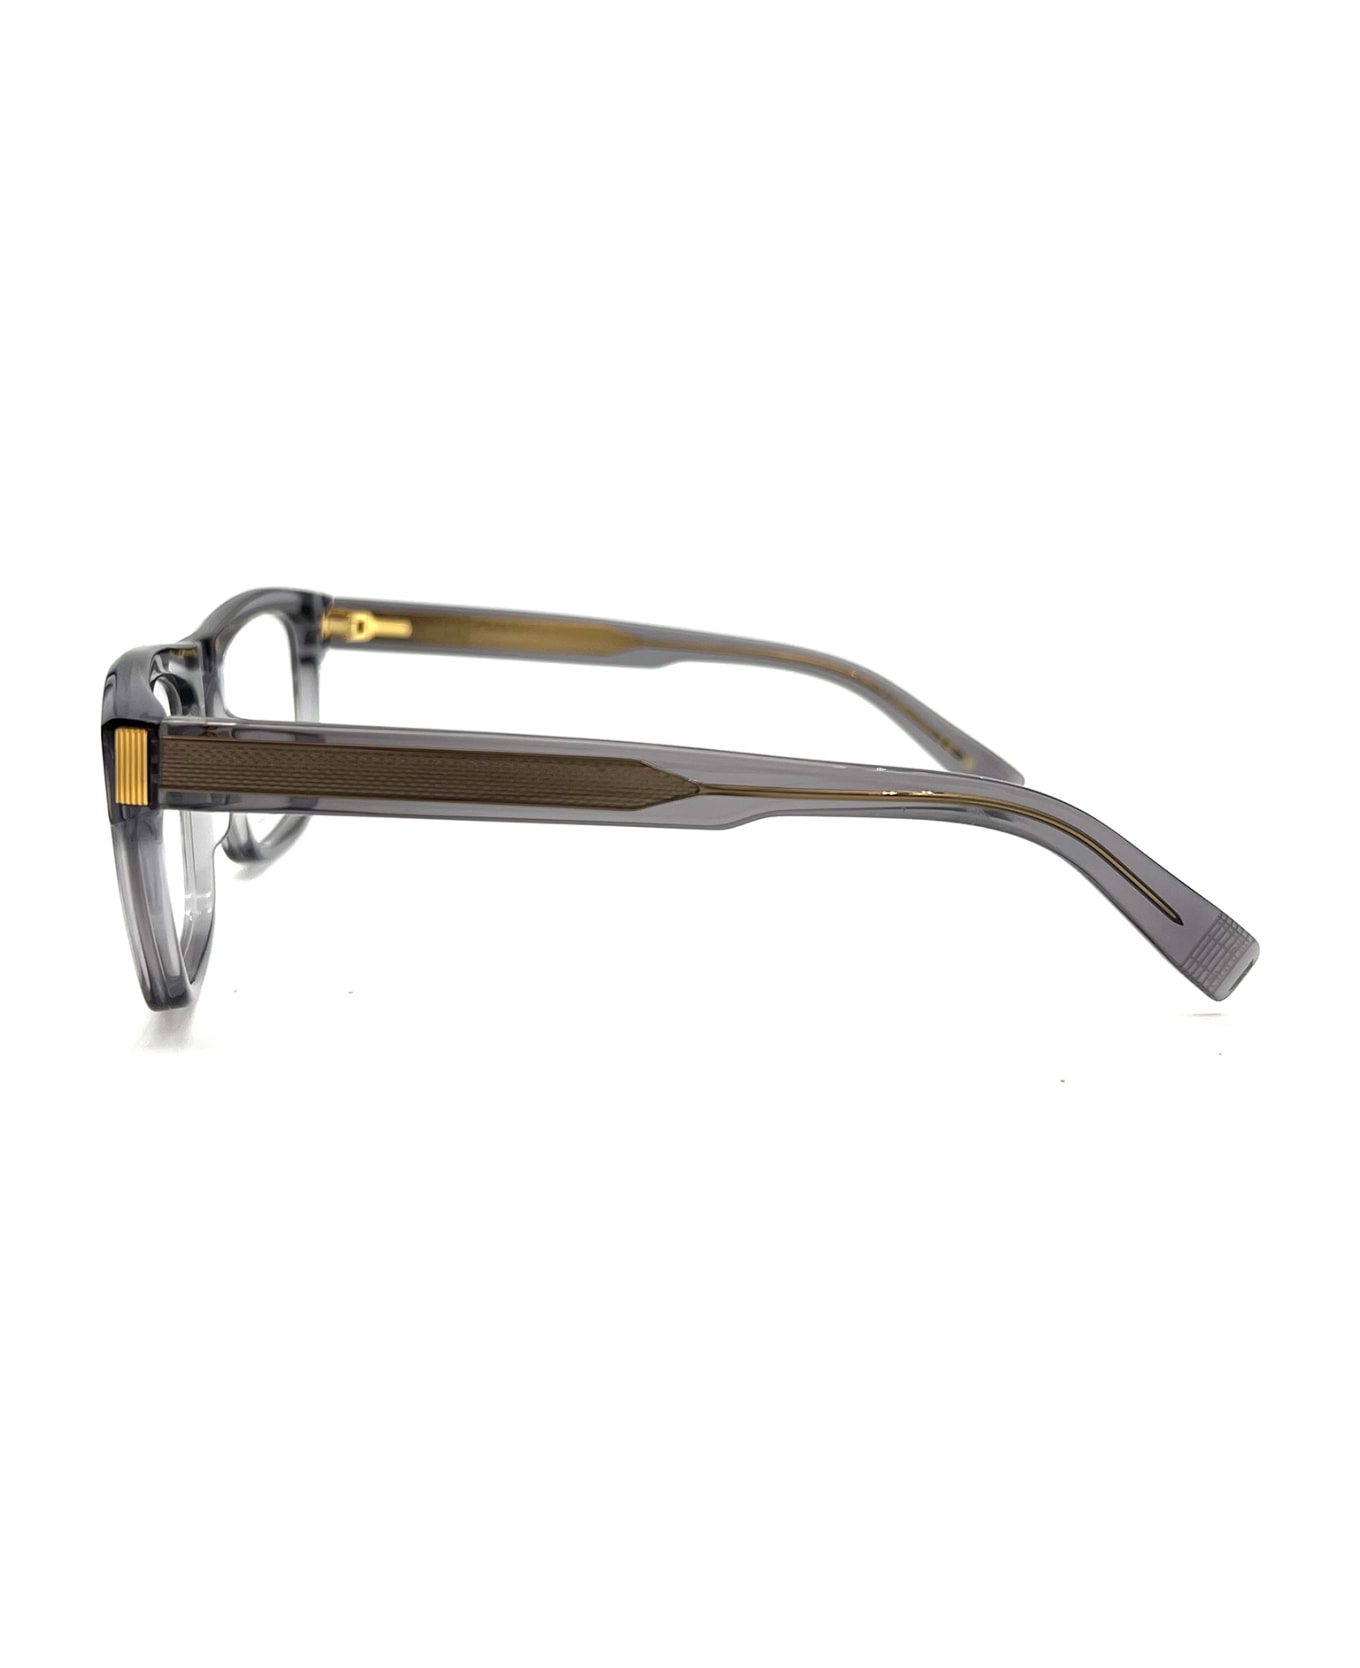 Dunhill DU0030O Eyewear - Grey Grey Transparent